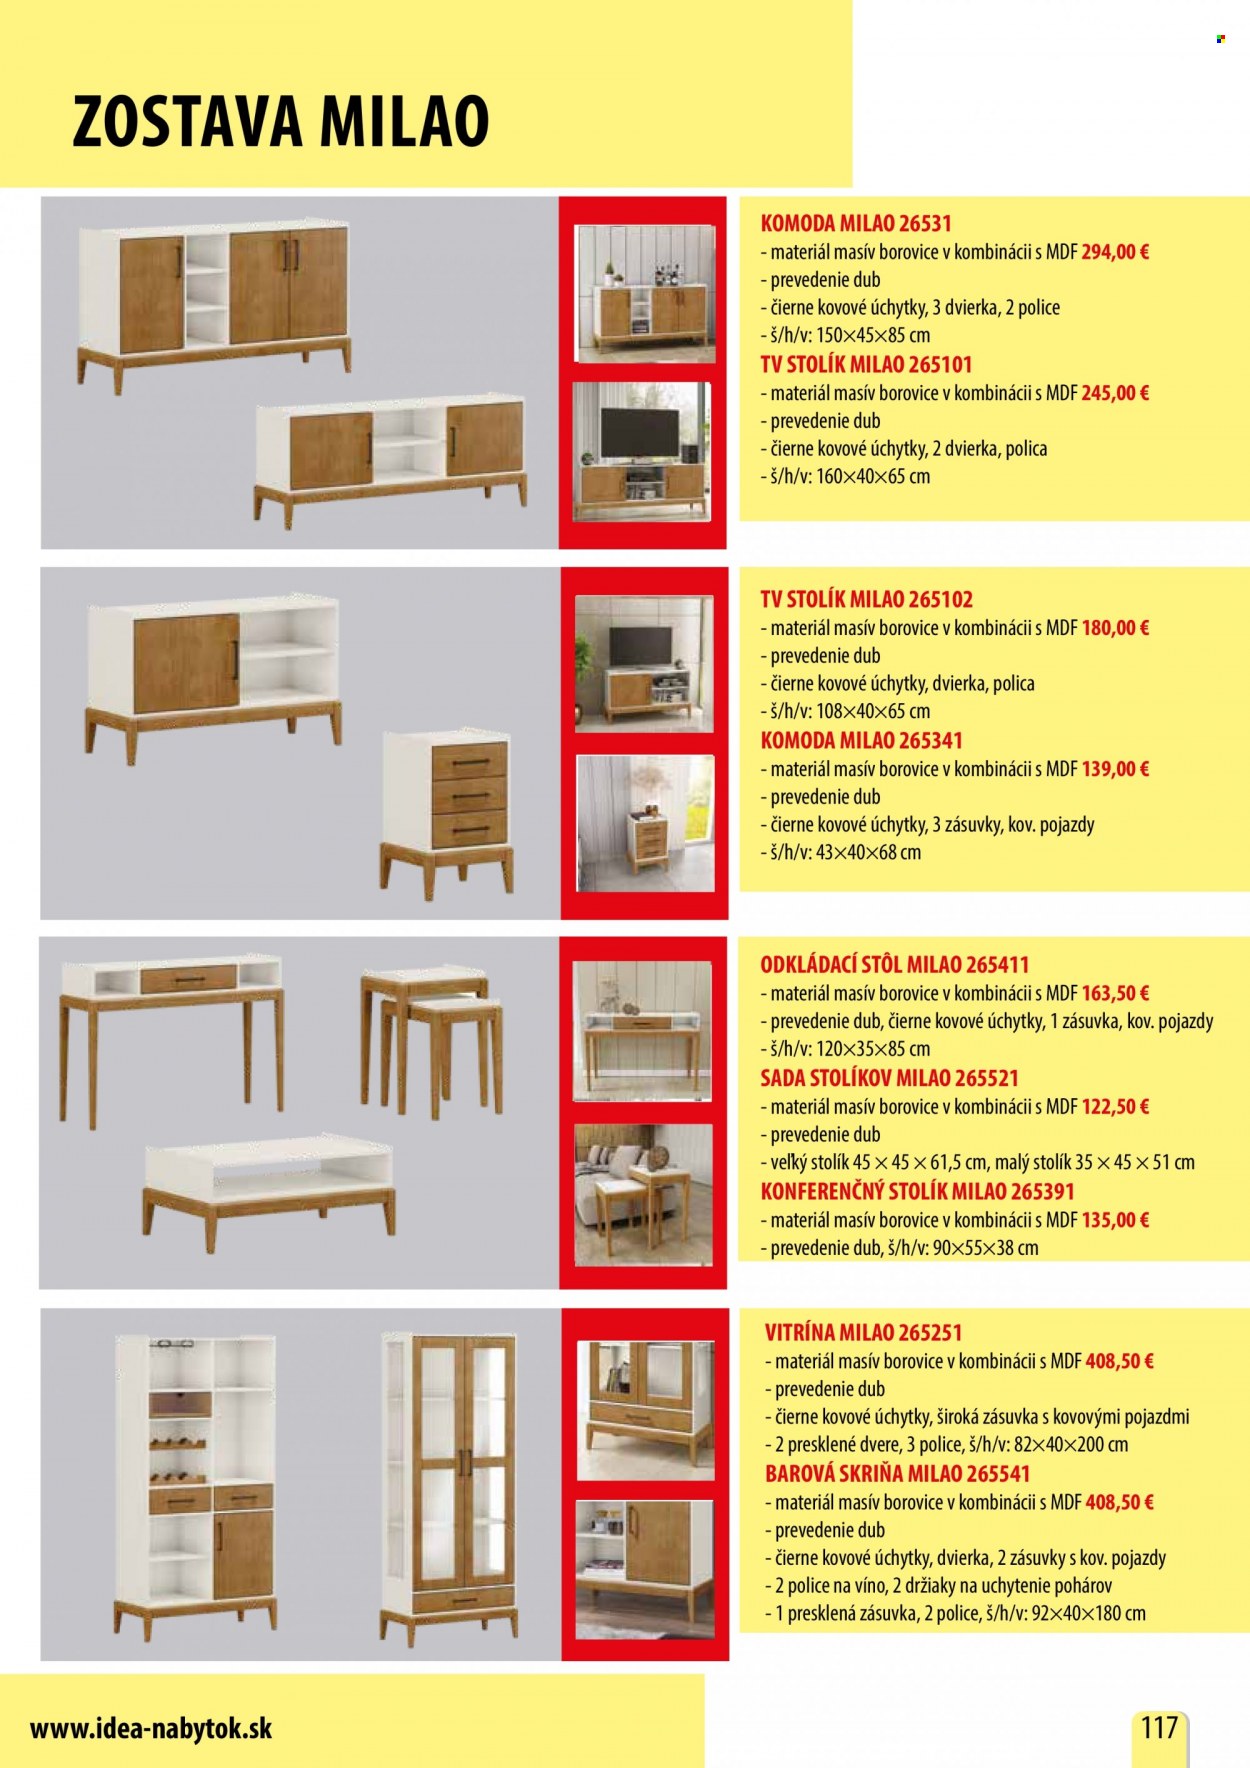 thumbnail - Leták IDEA nábytok - Produkty v akcii - stôl, vitrína, konferenčný stolík, tv stolík, stolík, komoda, skriňa. Strana 117.